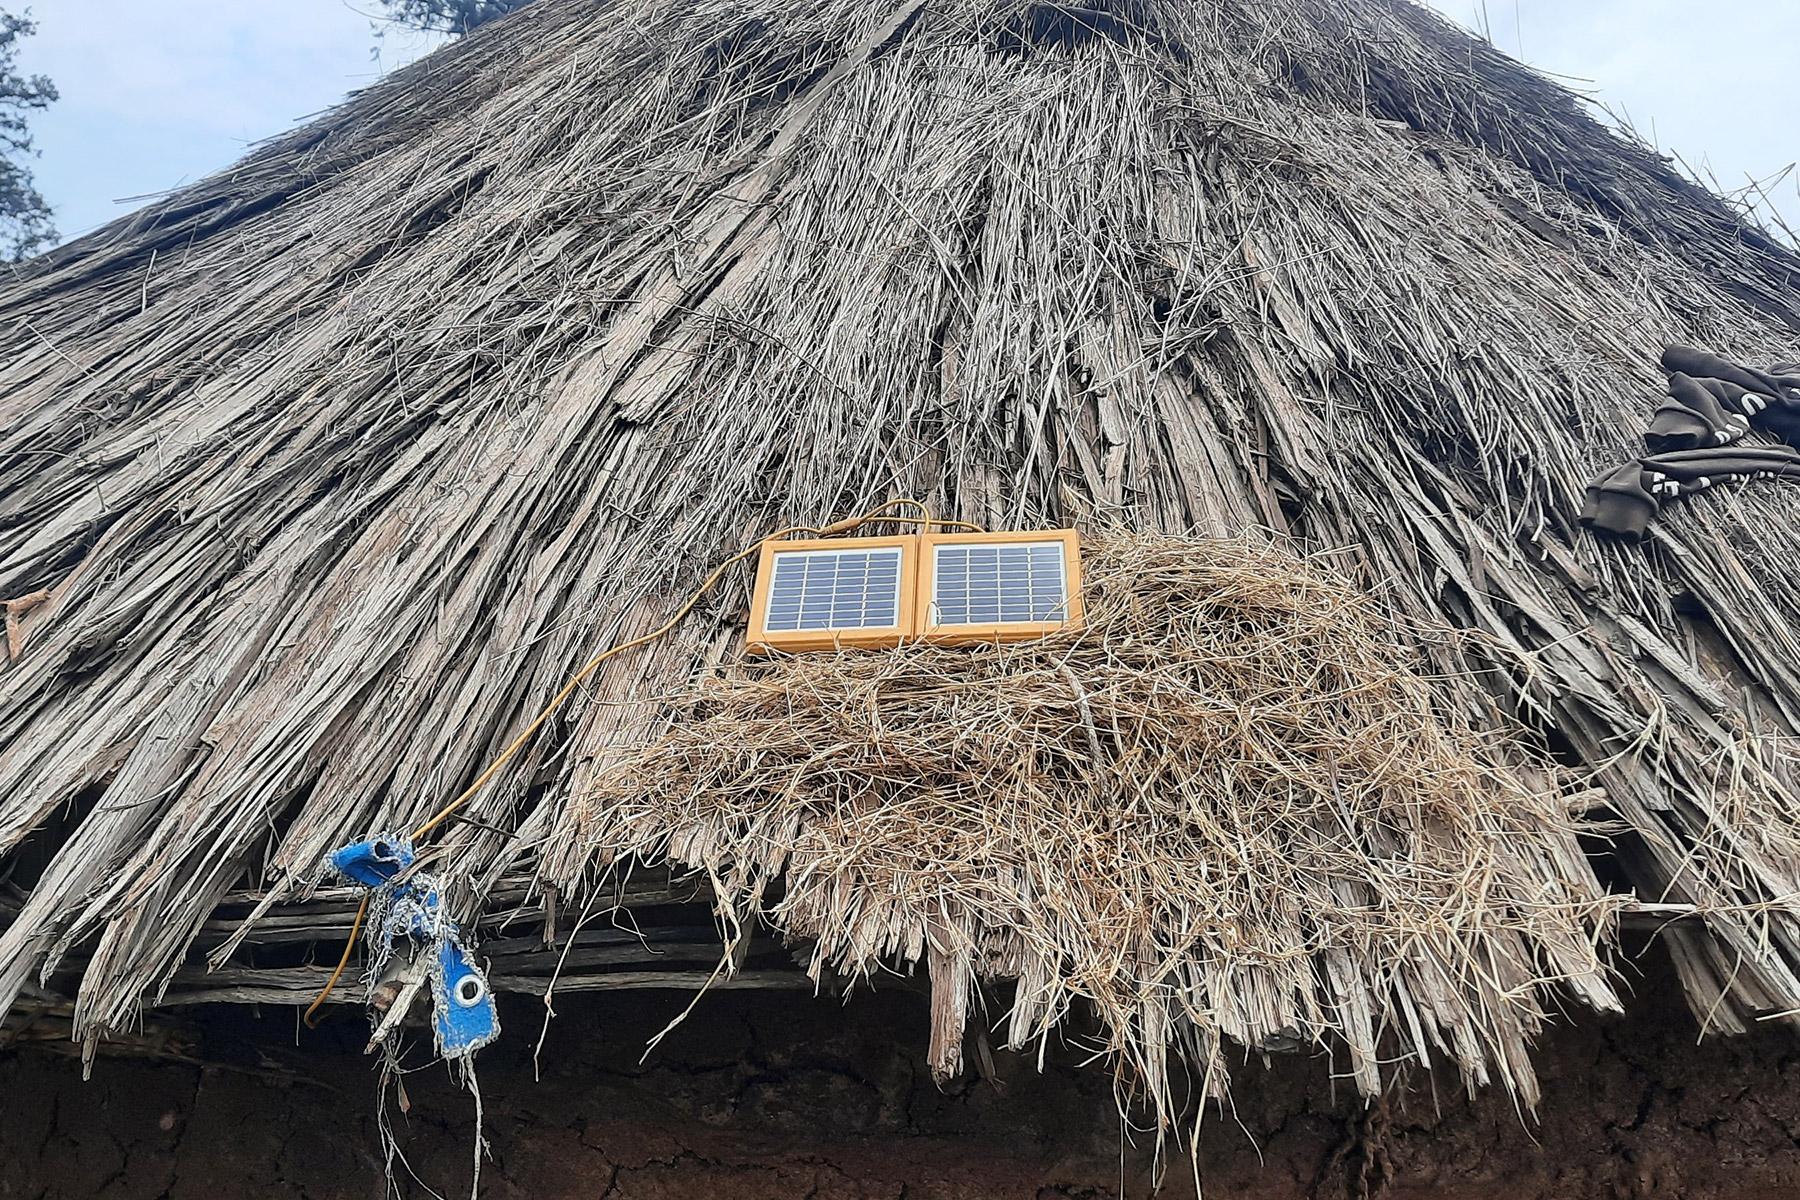 Un panel fotovoltaico en el techo de un tukul, una casa tradicional de arcilla en la comunidad de Rukiye. Fotografía: FLM/ S. Gebreyes